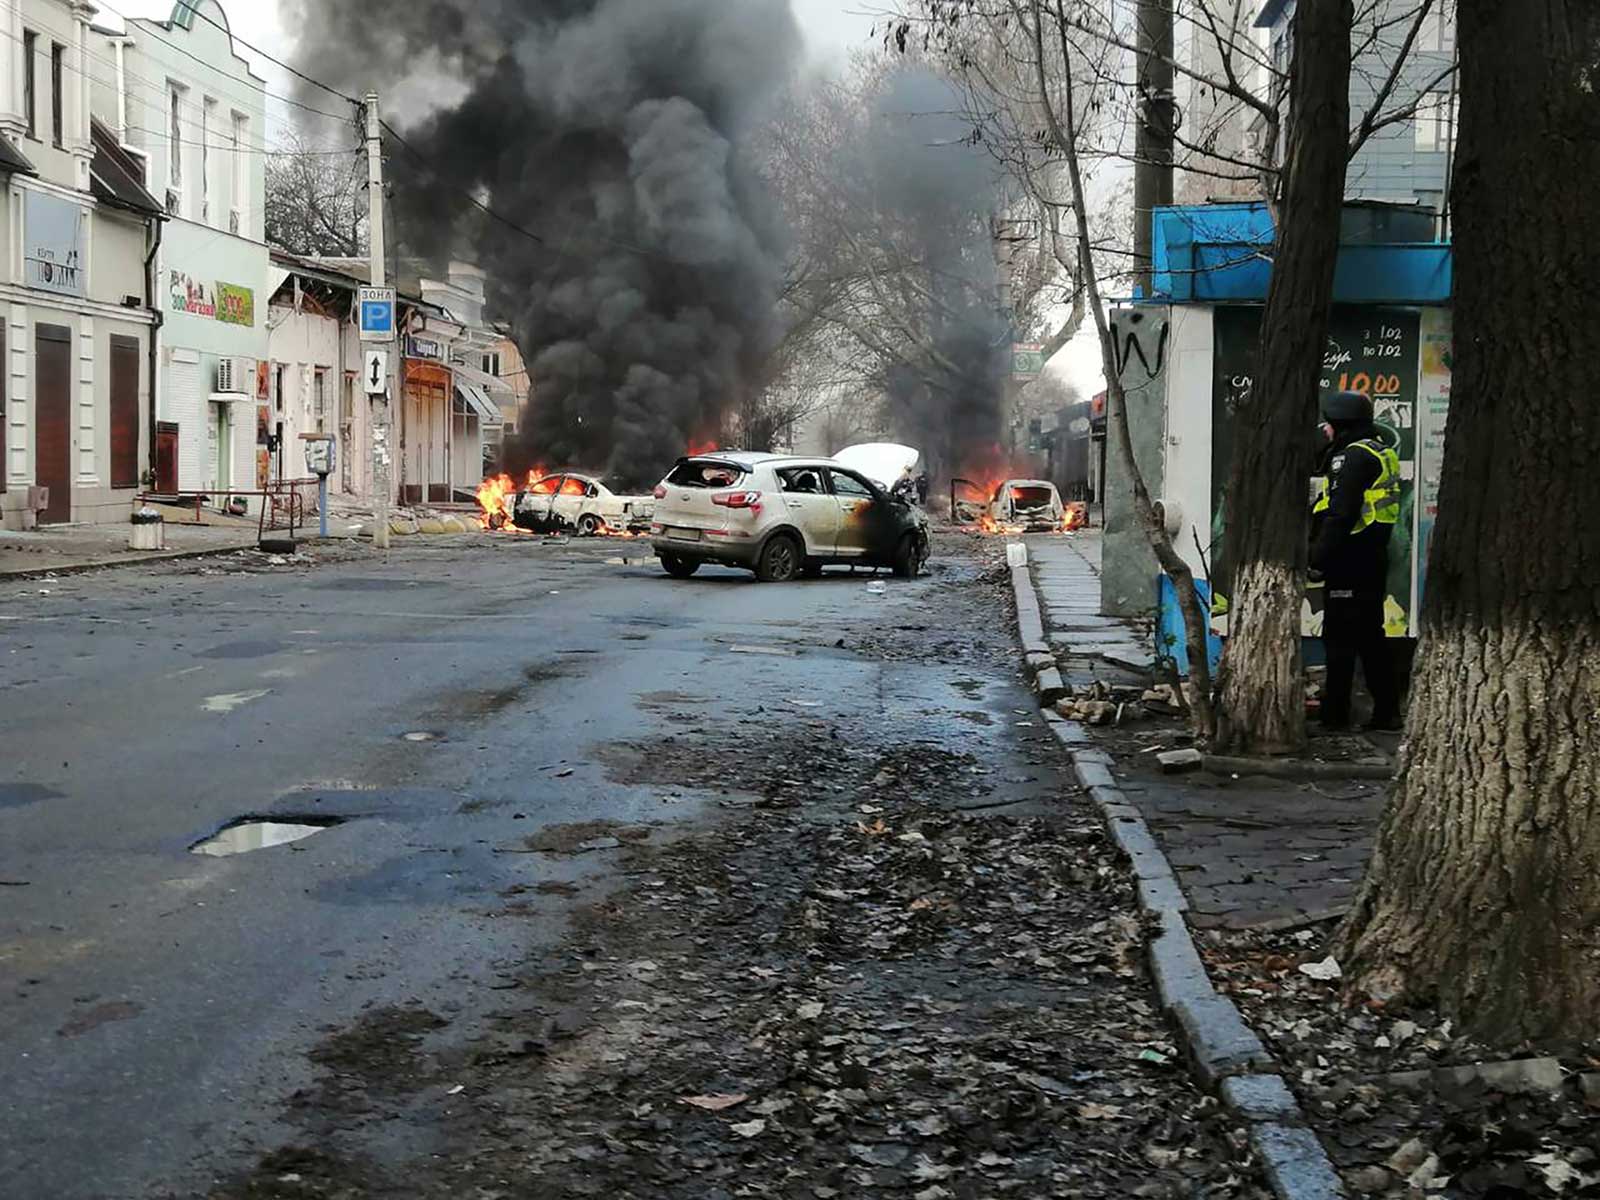 كييف: جرح 70 ضابطاً روسياً بعد هجوم في خيرسون